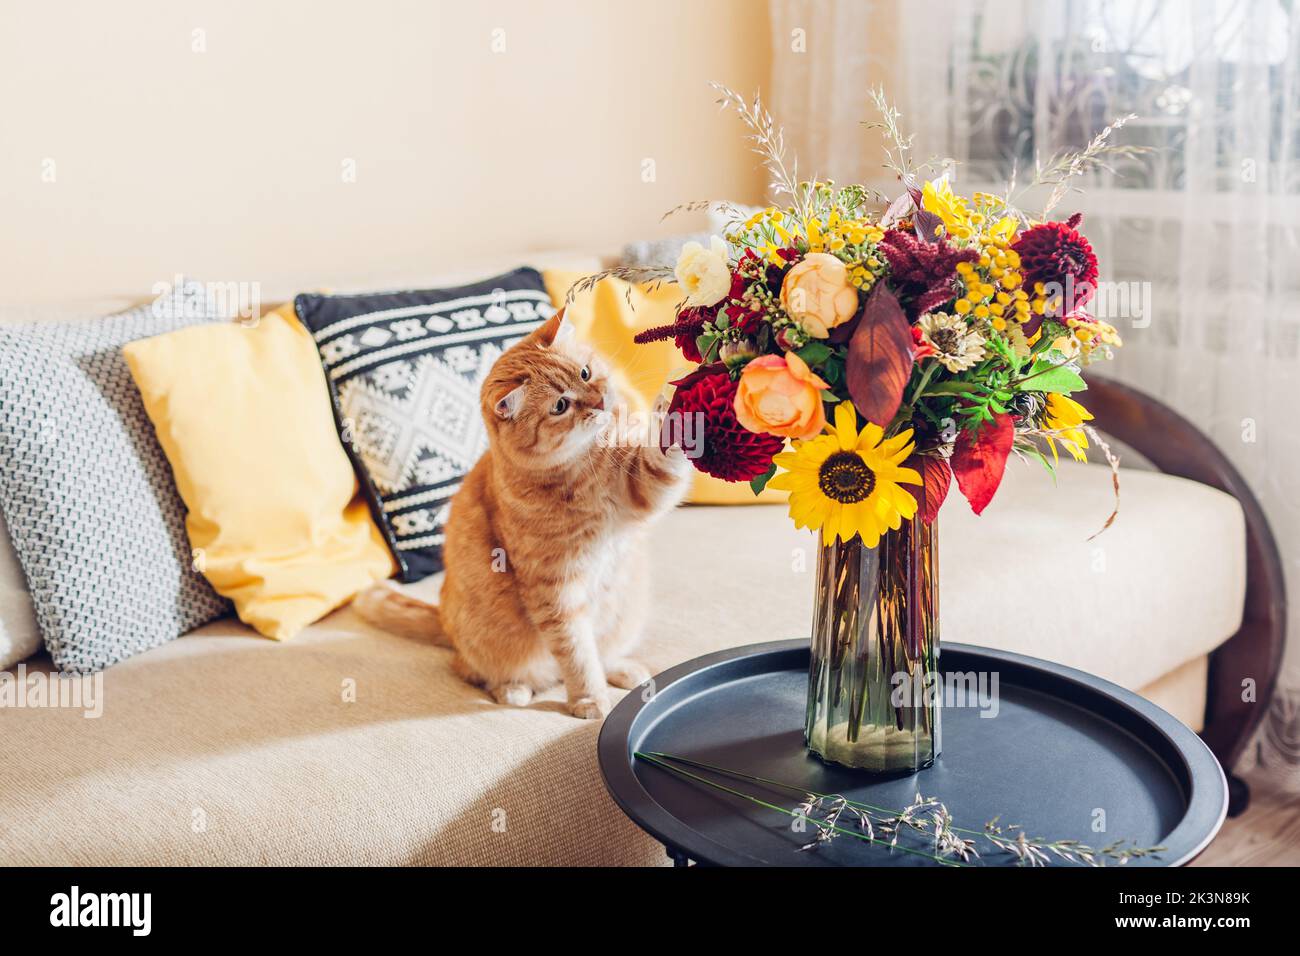 Chat de gingembre jouant avec un bouquet de fleurs de couleur automnale mis dans un vase sur une table. Animal curieux s'amusant à la maison Banque D'Images